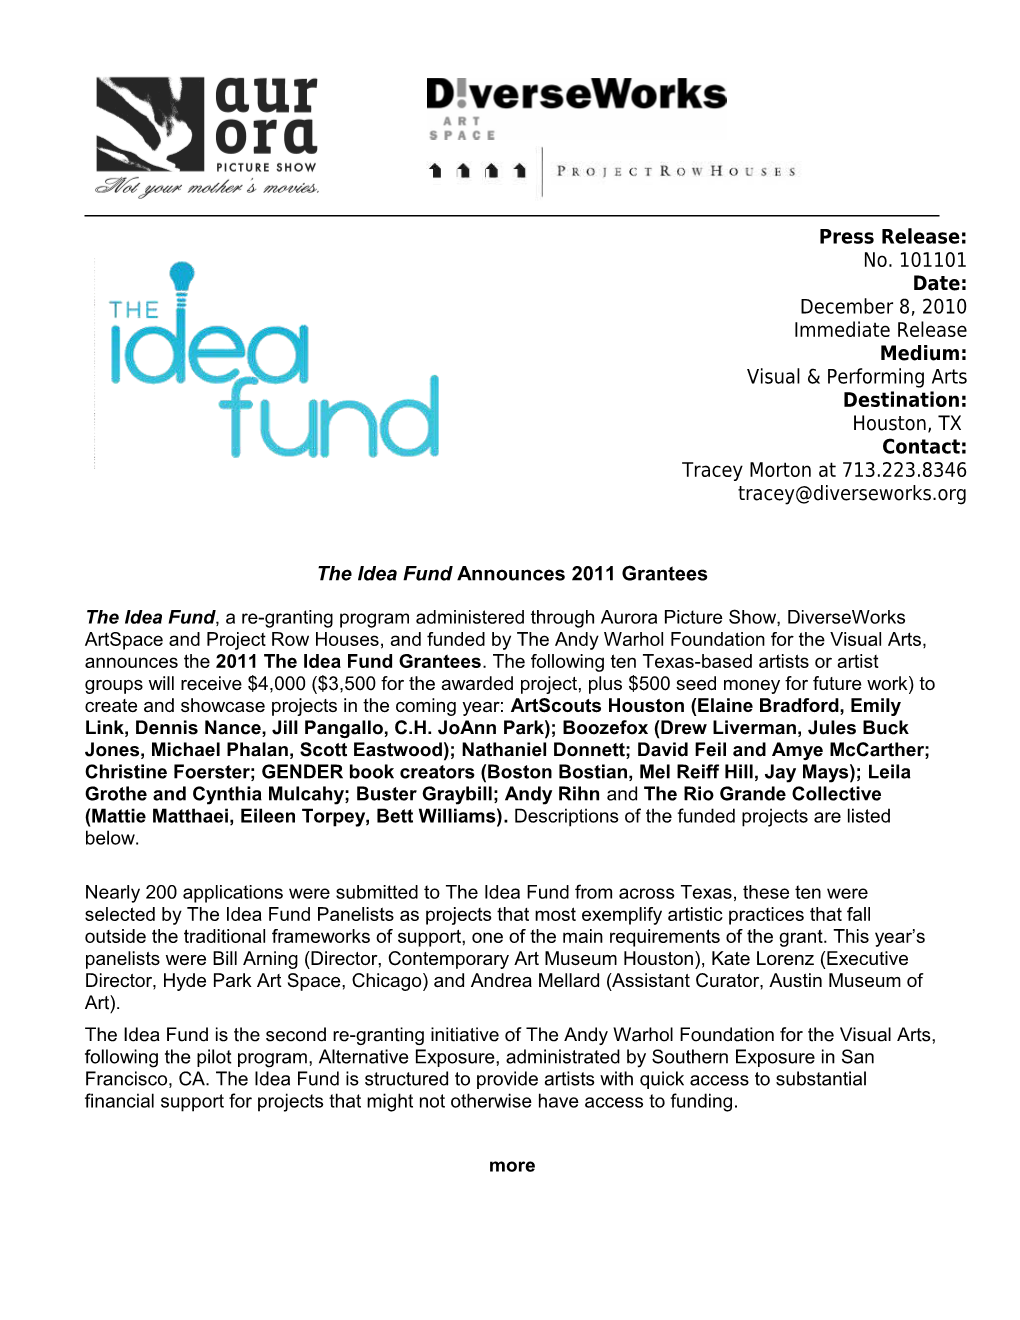 The Idea Fund Announces 2011 Grantees